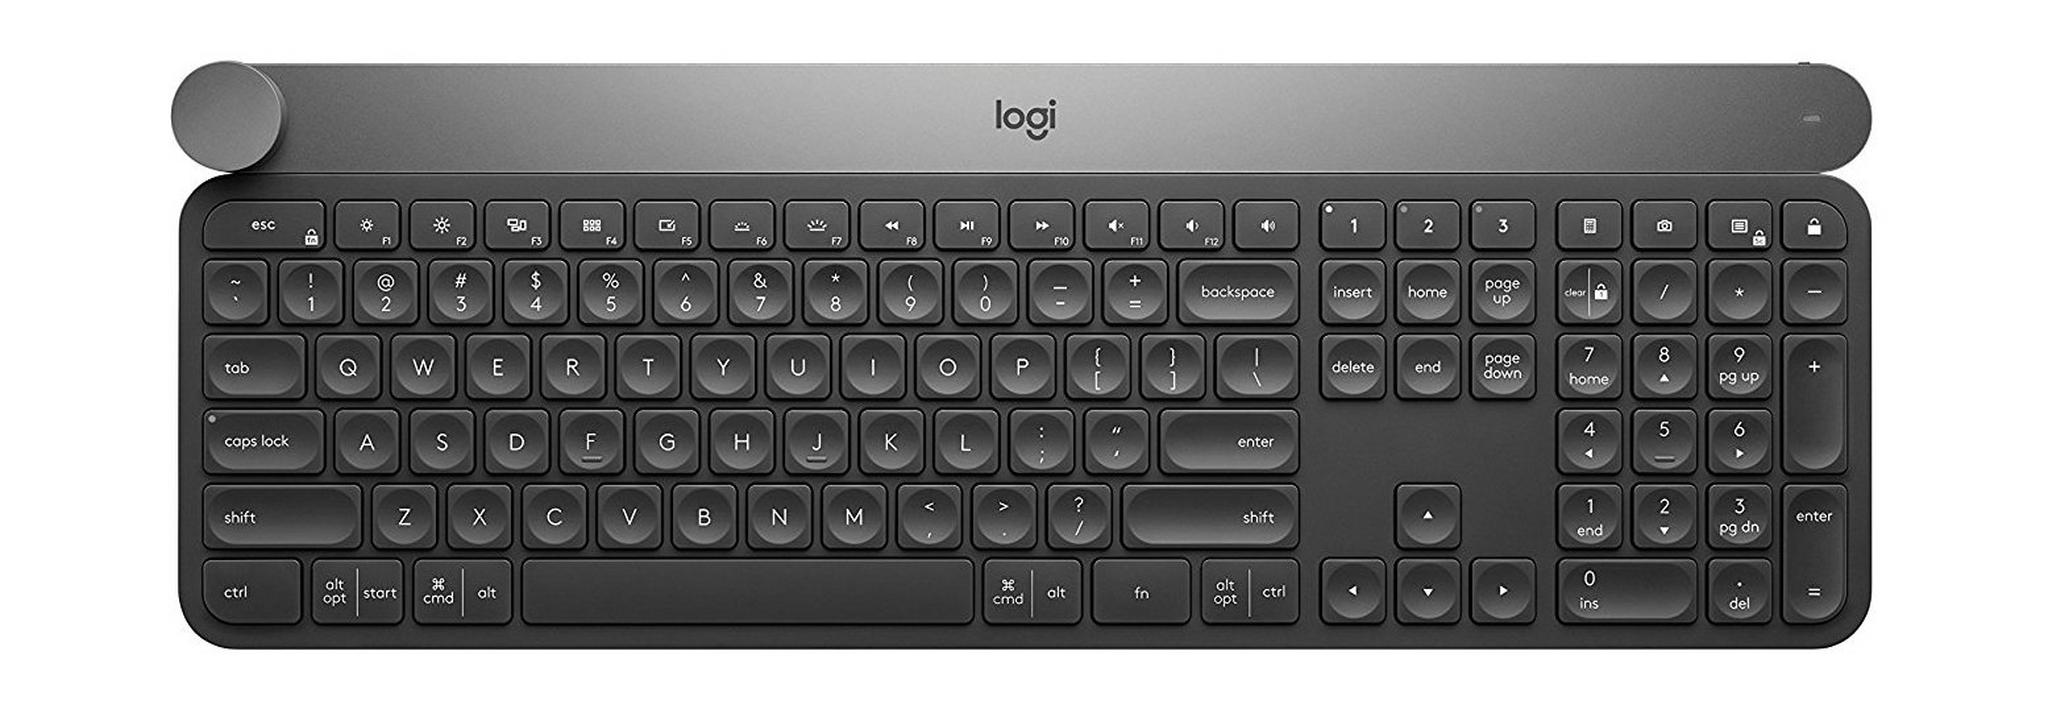 لوحة المفاتيح اللاسلكية المتقدمة كرافت مع قرص إدخال إبداعي من لوحة المفاتيح - (920-008504)